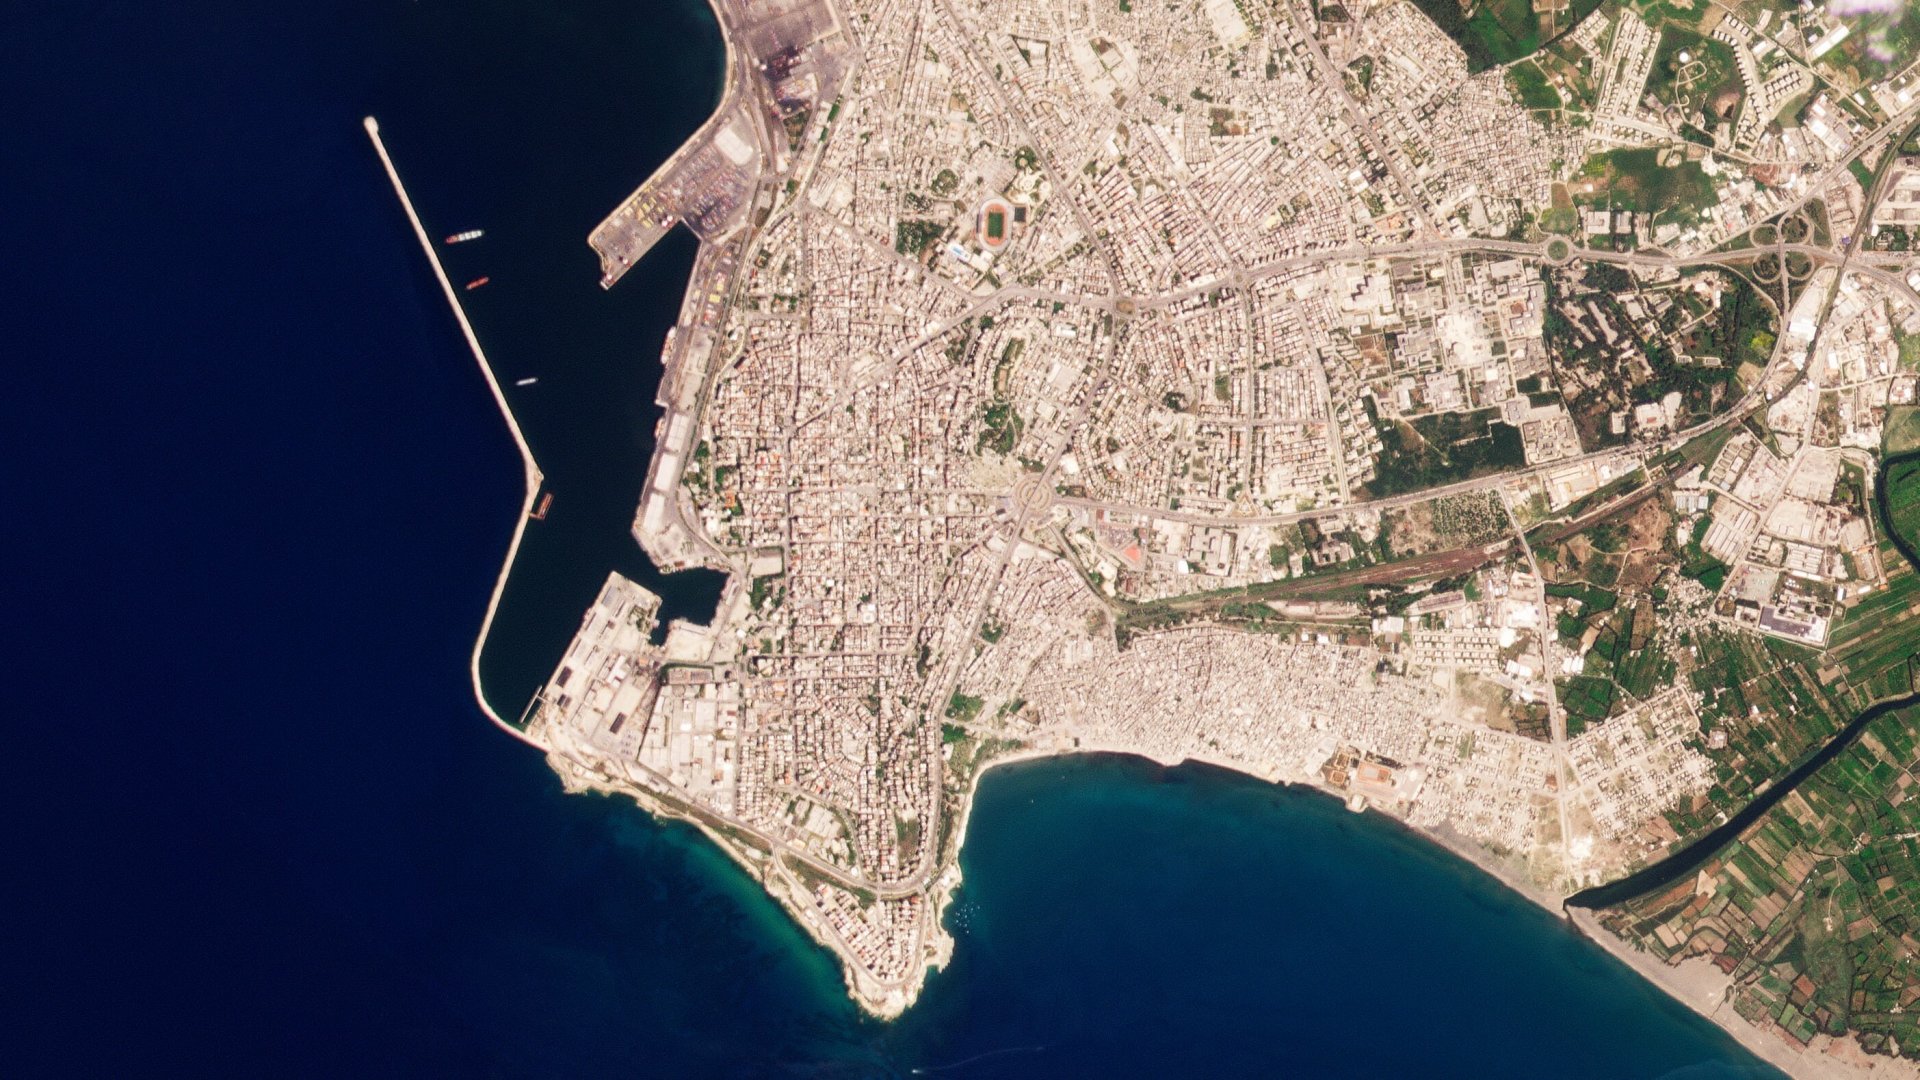 Сателитни снимки на Planet Labs PBC, анализирани от Асошиейтед прес в сряда, 11 май, показват, че корабът "Матрос Позинич" под руски флаг, за който се смята, че носи откраднато украинско зърно, акостира в пристанището на Латакия, Сирия